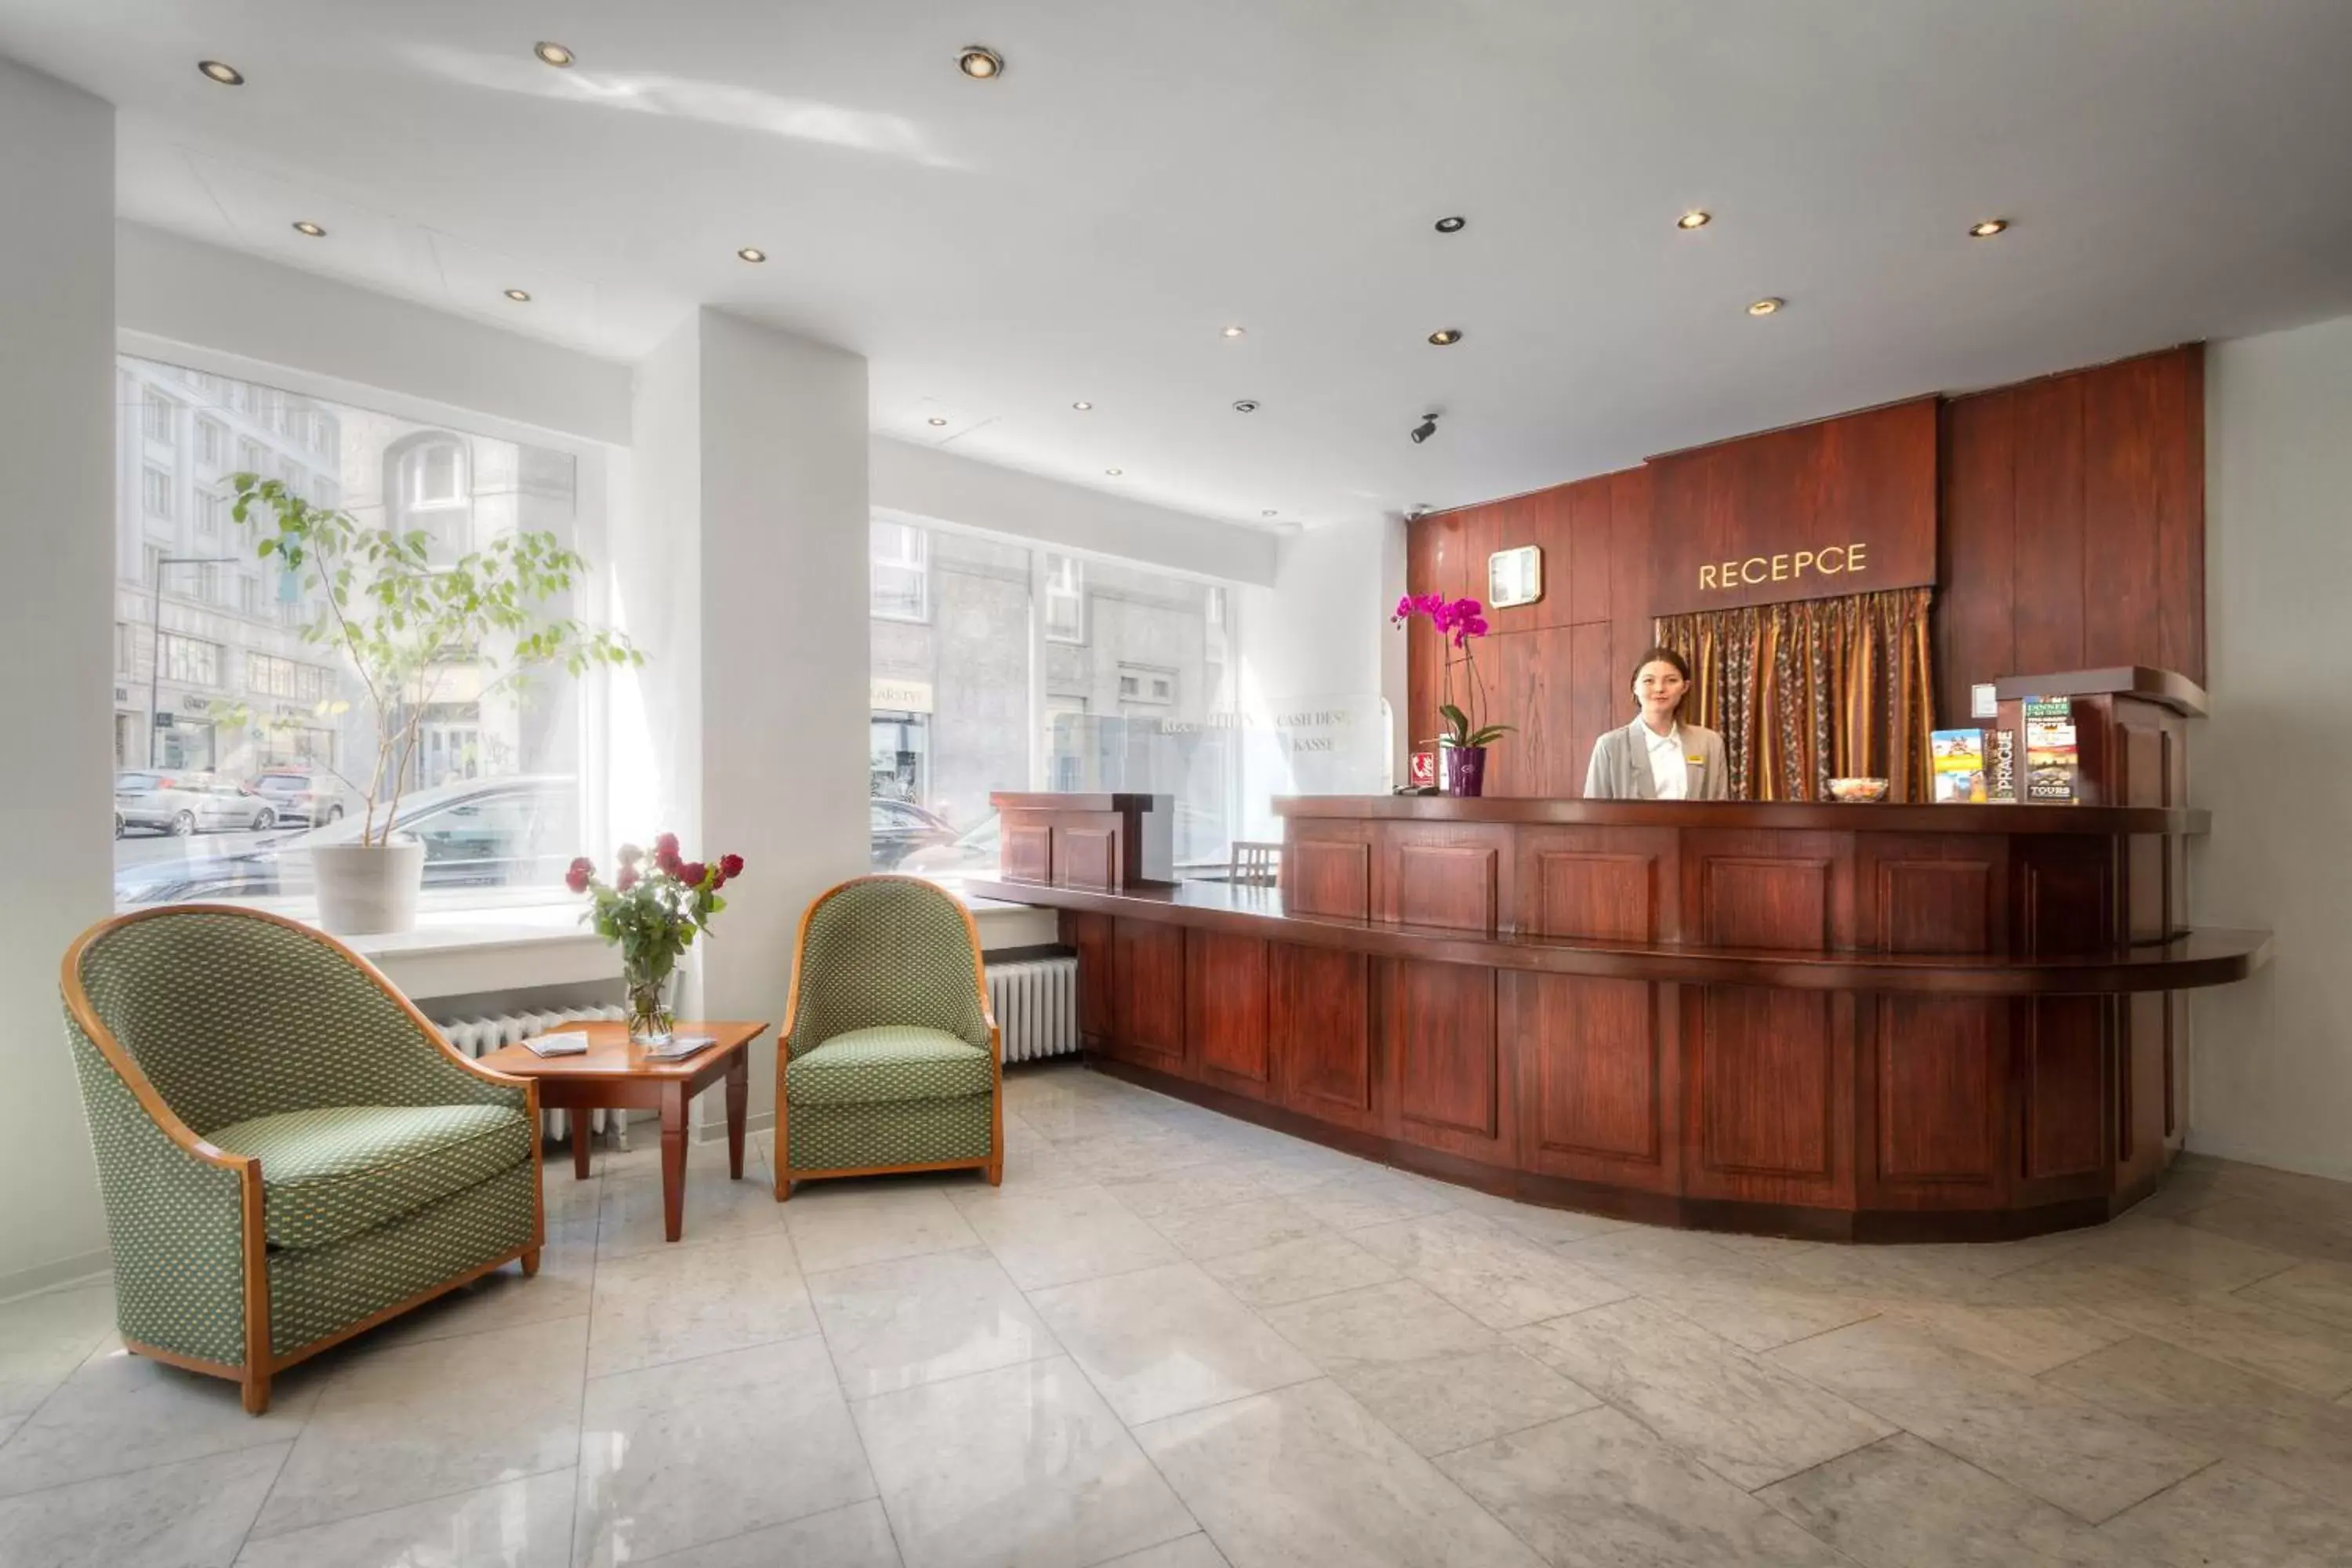 Lobby or reception, Lobby/Reception in Hotel Harmony